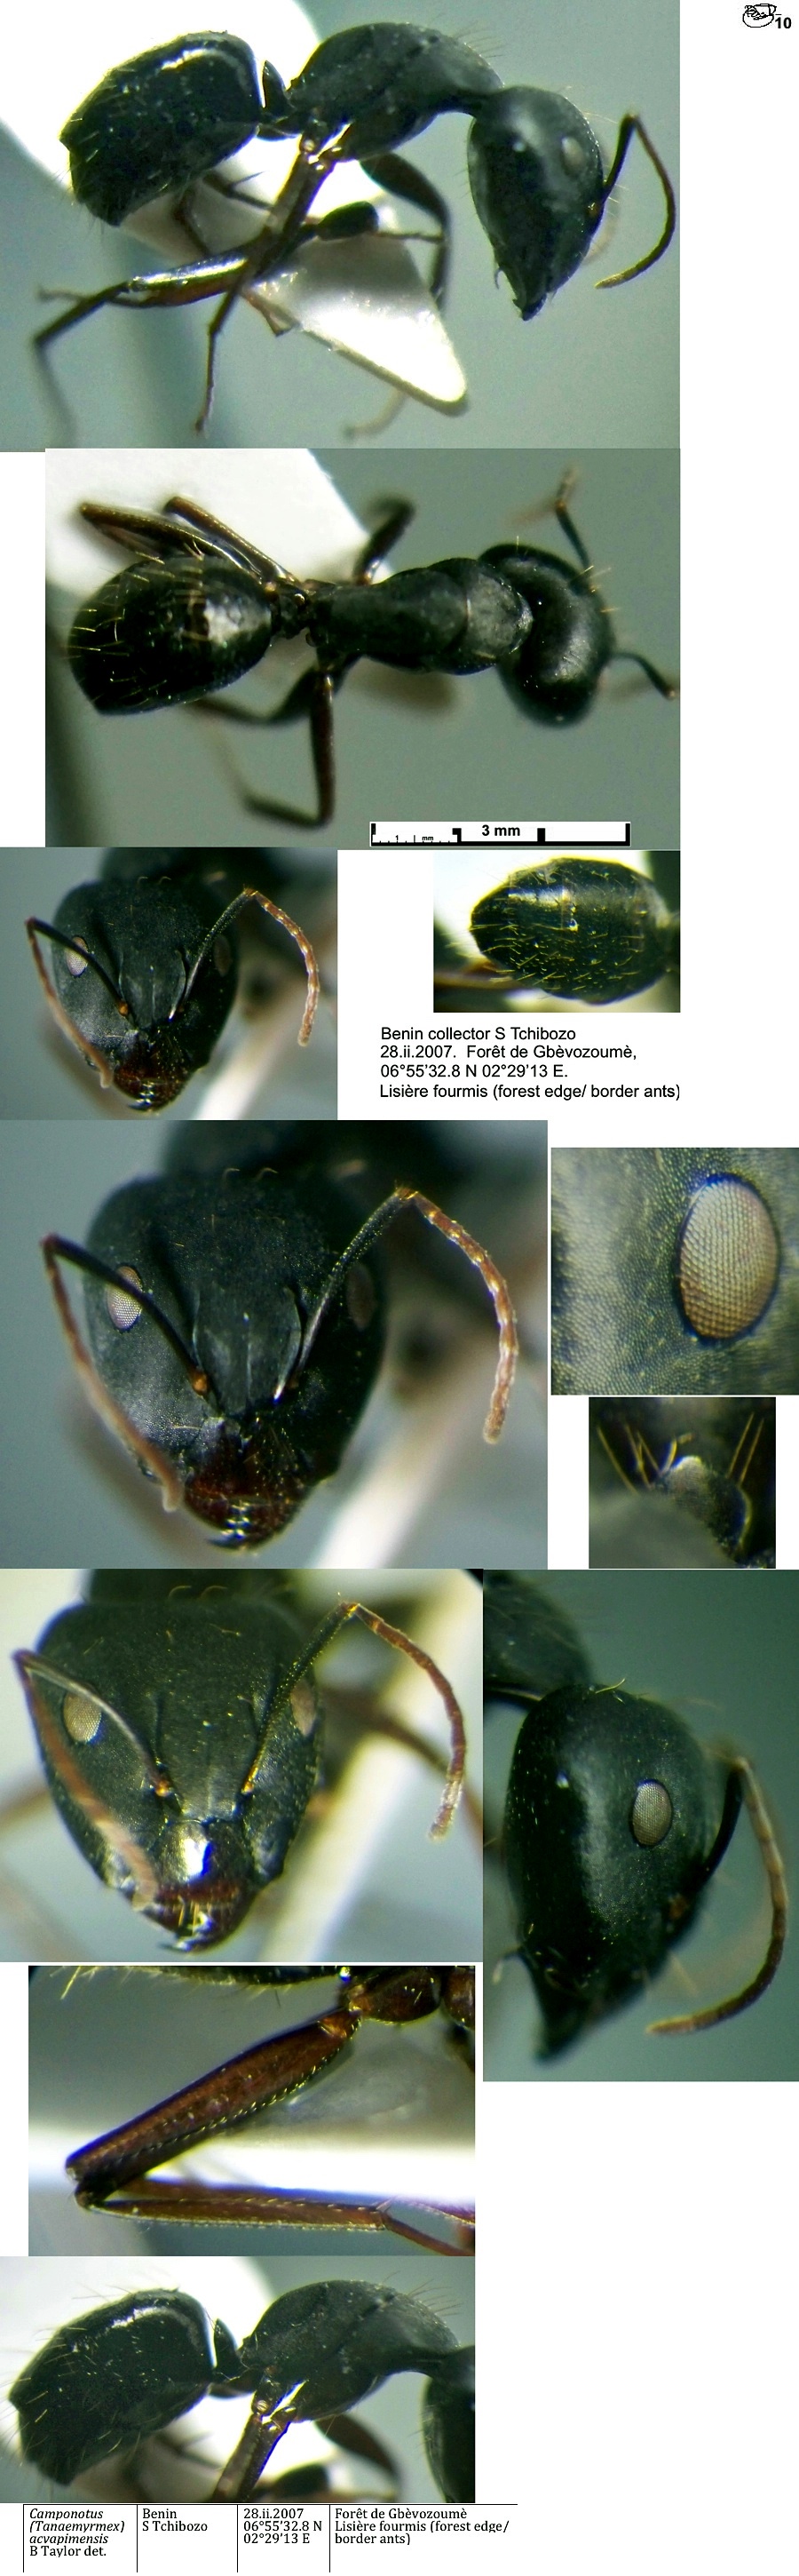 {Camponotus acvapimensis major}